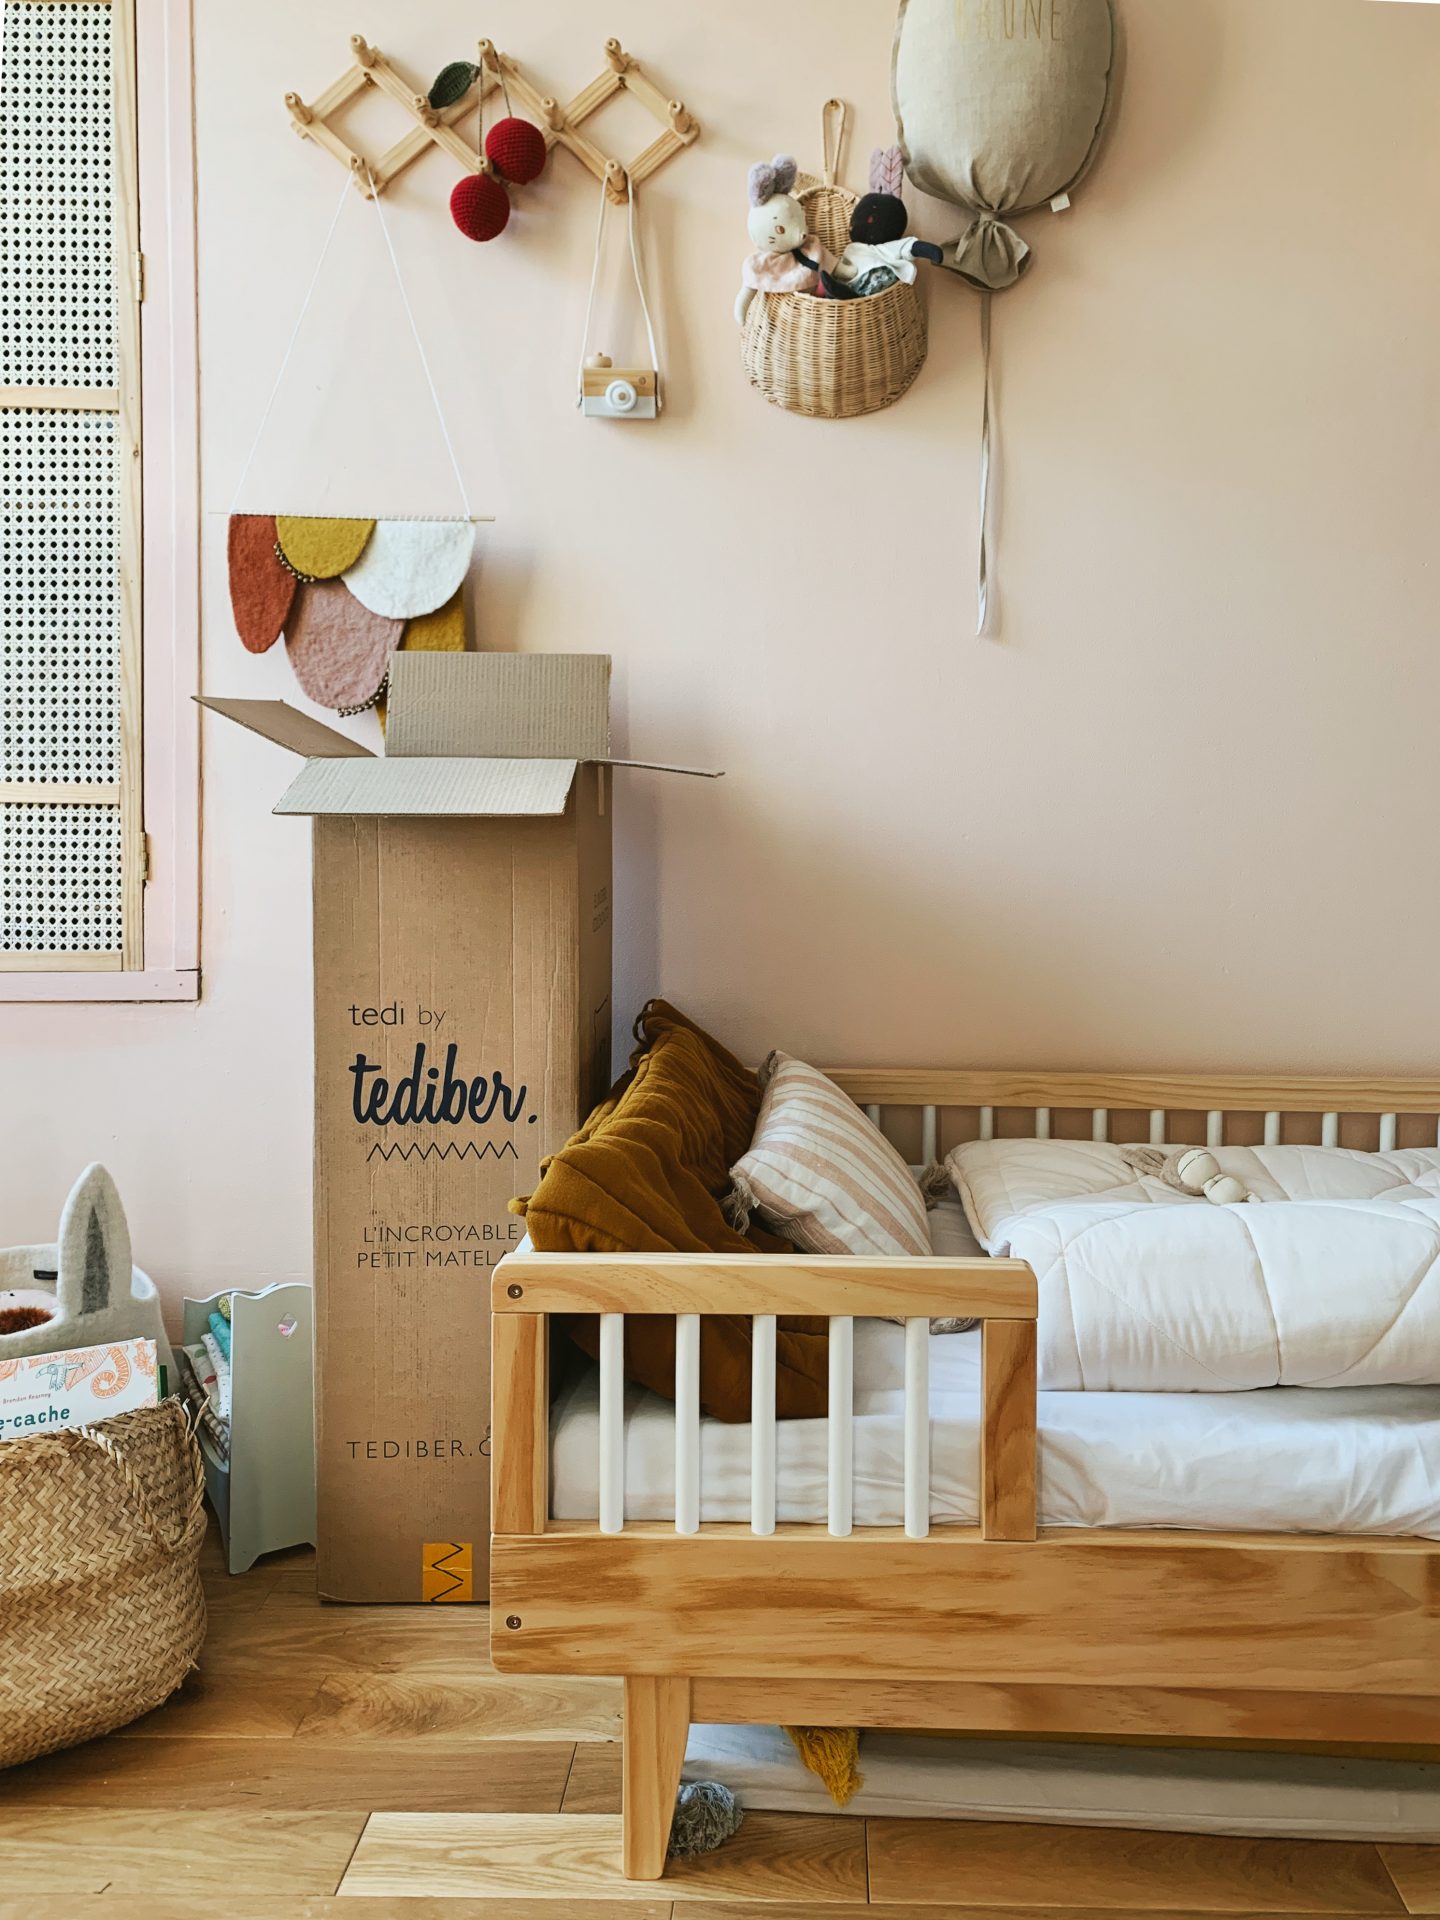 Trouvez tout le linge de lit pour la chambre d'enfant ✔️ Petite Amélie